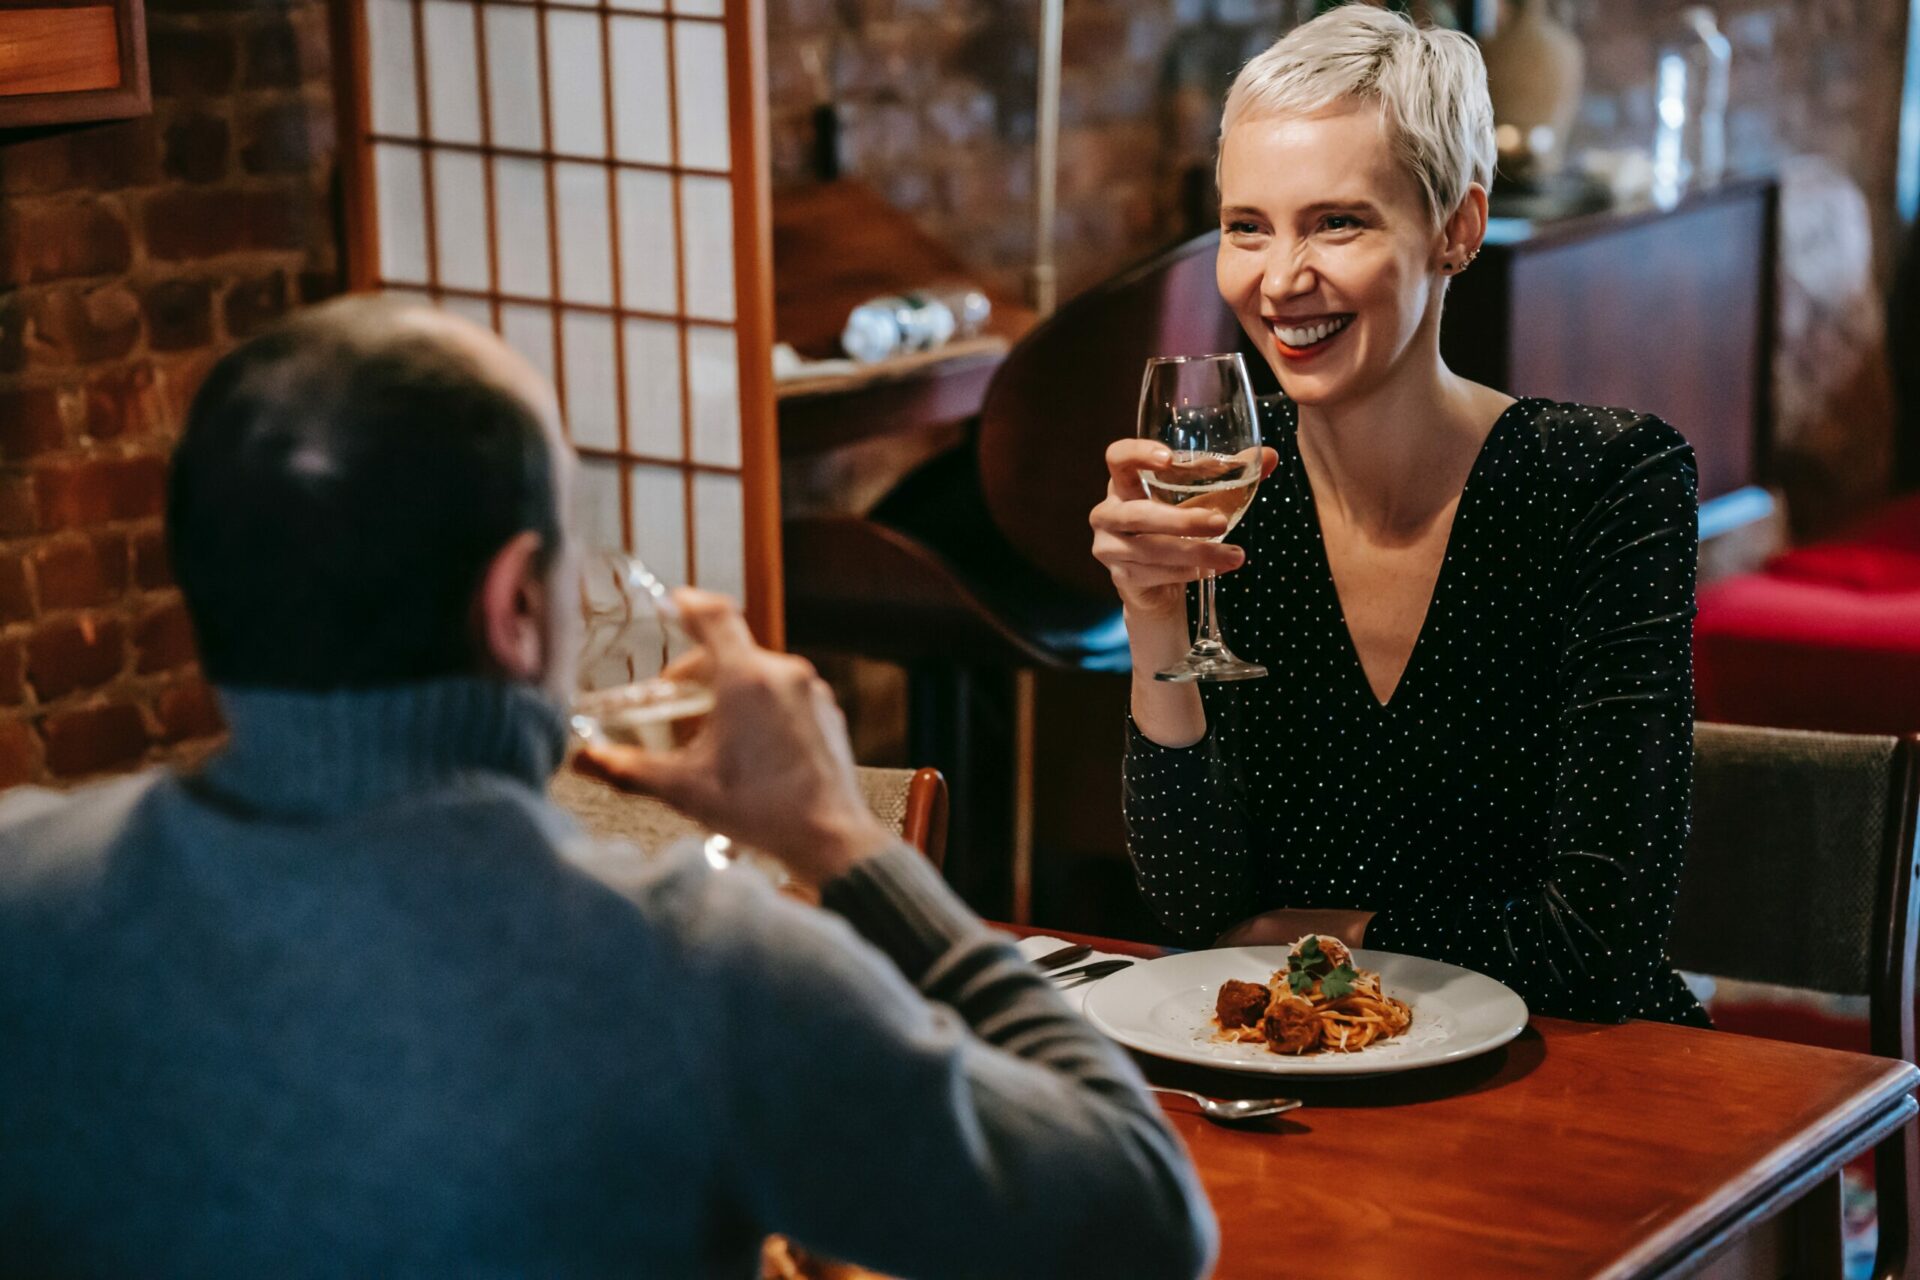 A cena, in due e prenotando da app: come cambiano le abitudini al ristorante in tempi di Covid